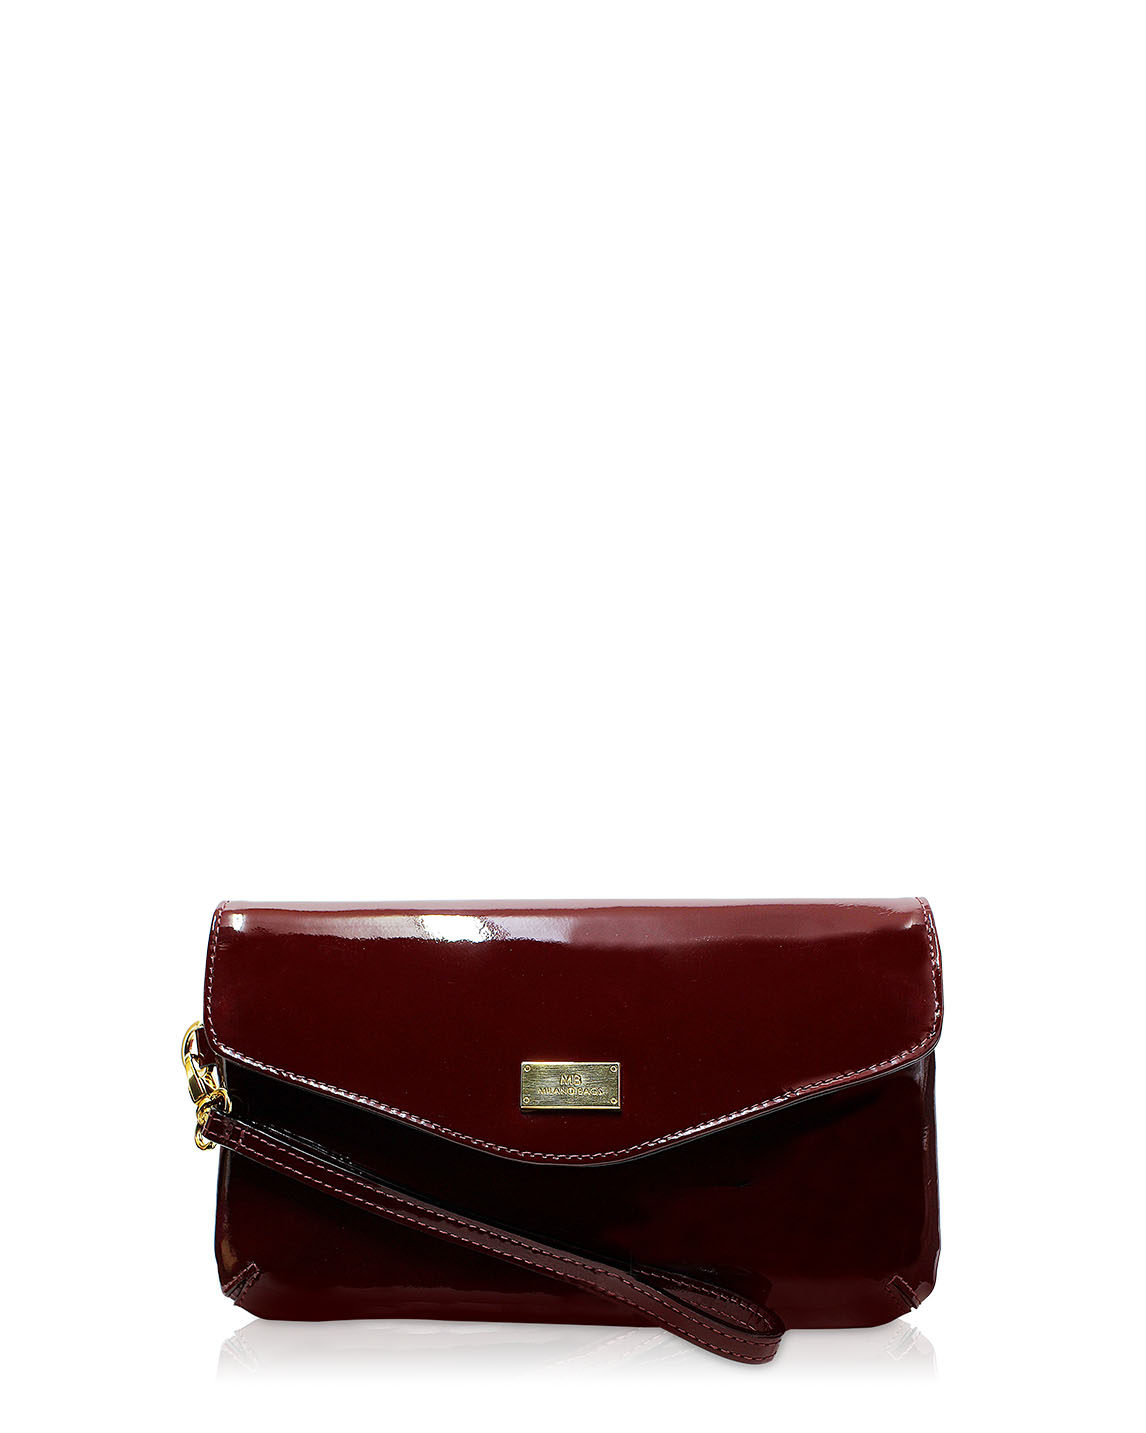 Carteras Clutch & Evening Bag DS-2455 Color Rojo